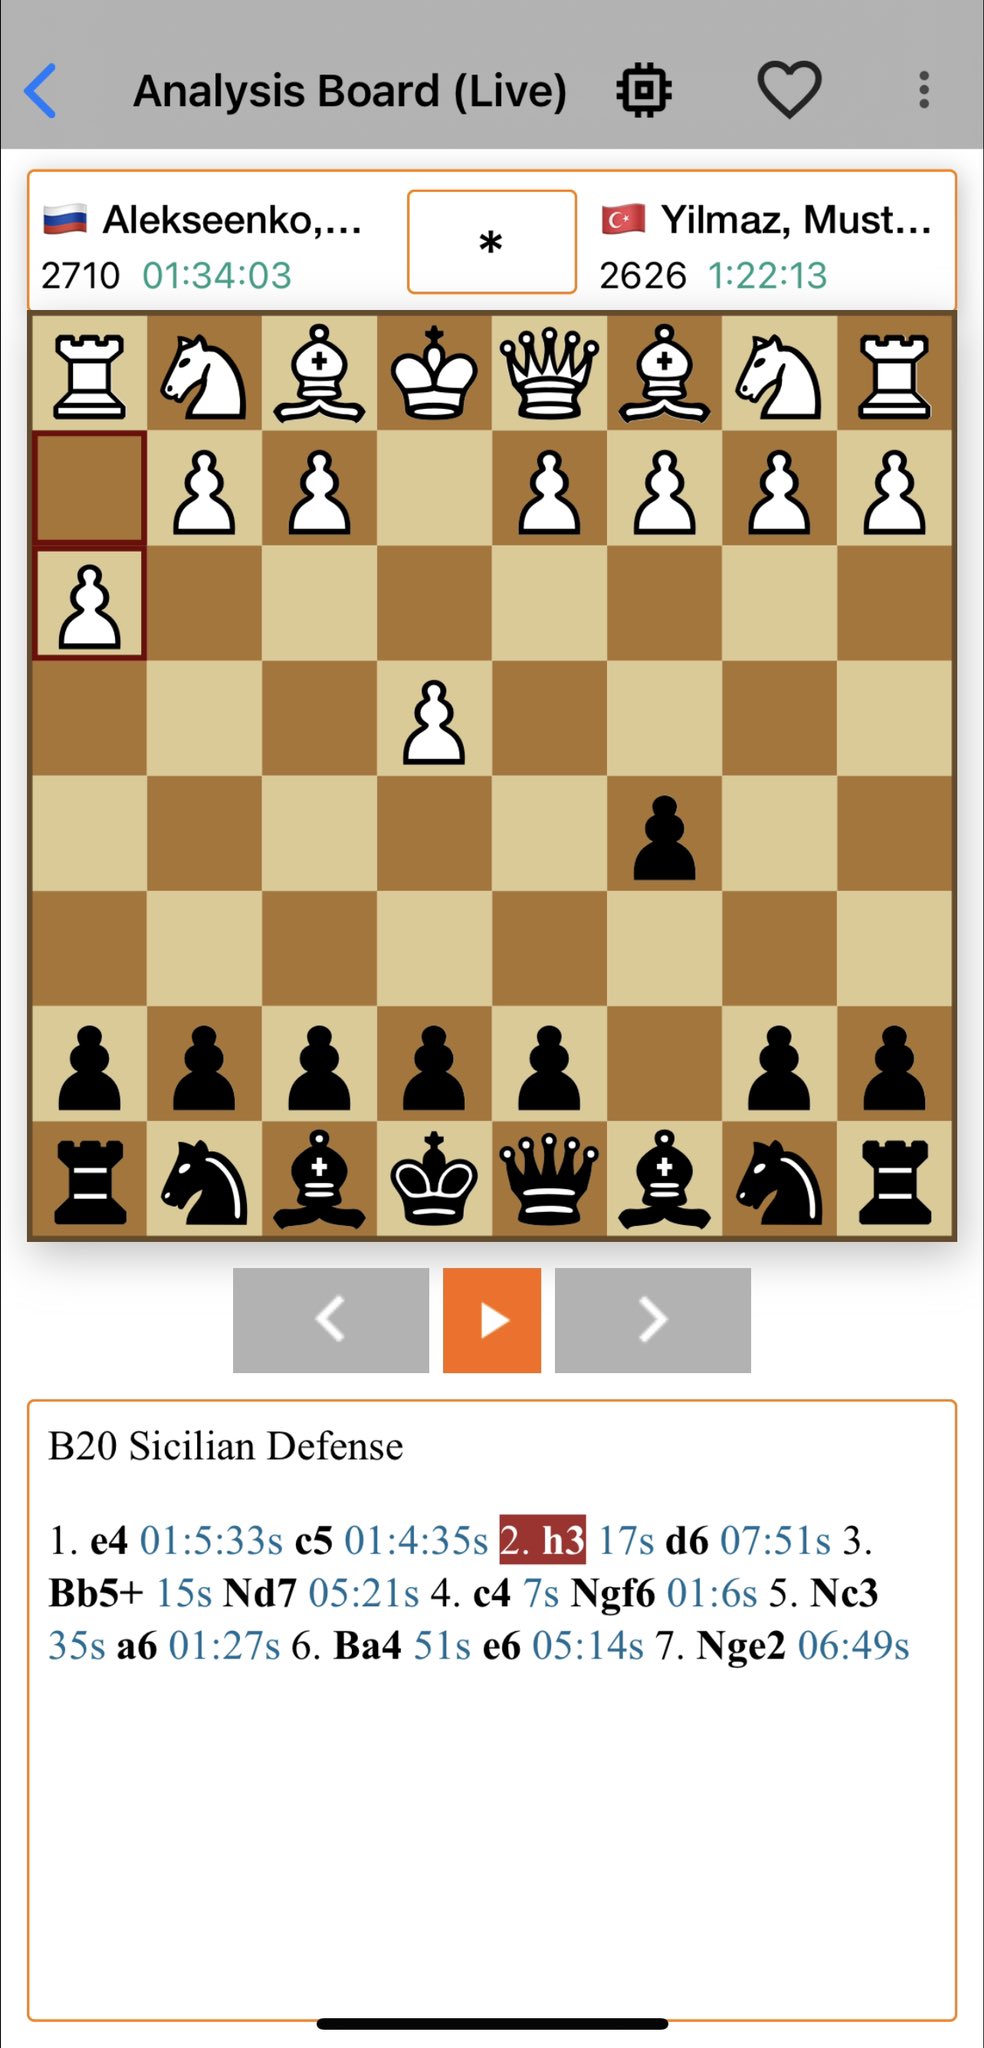 B20 - The Sicilian Defense 